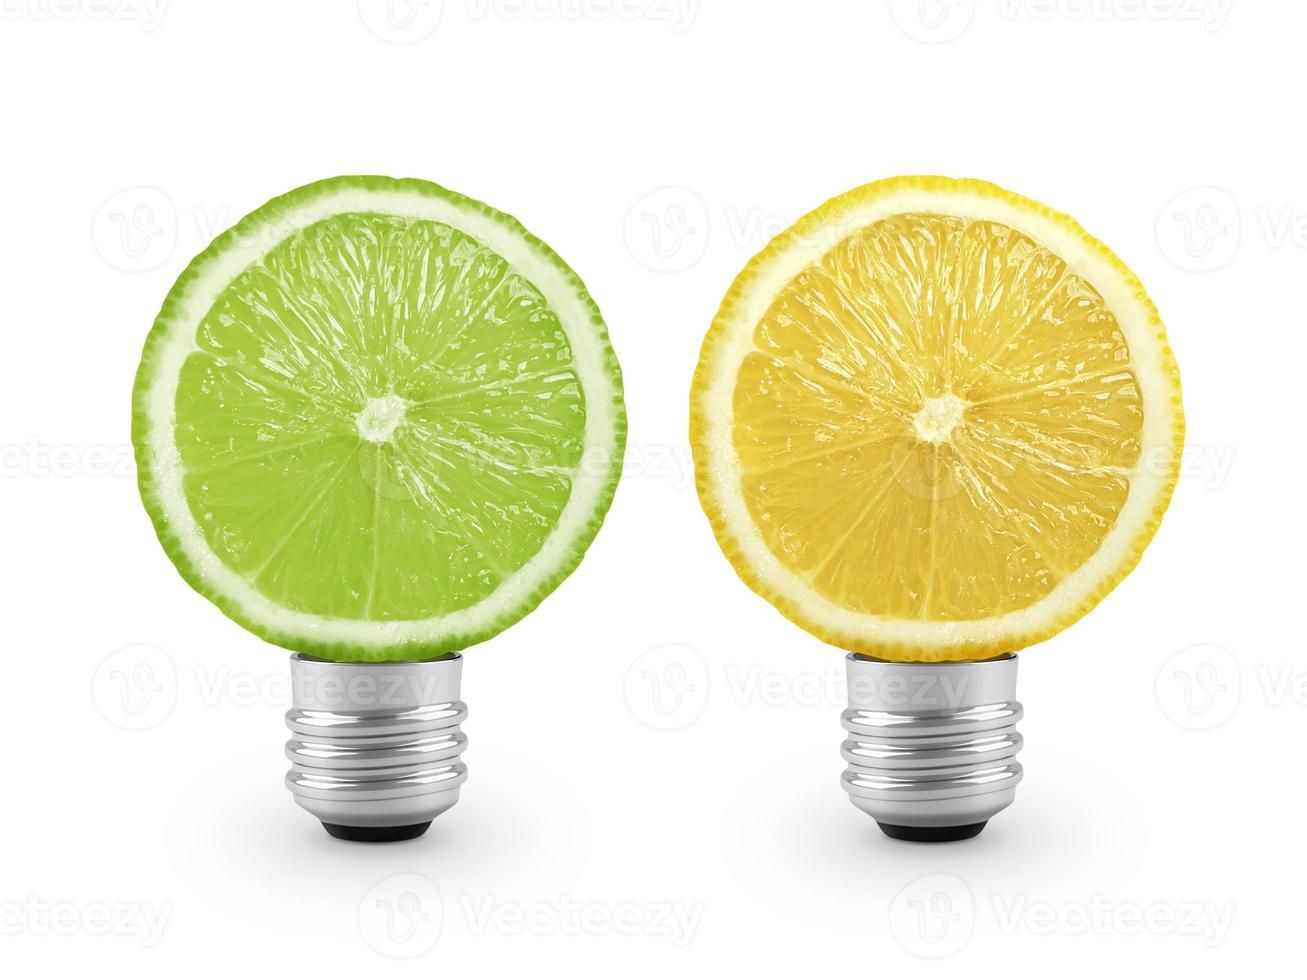 bombilla de luz de limón sobre fondo blanco. concepto de salud y belleza foto